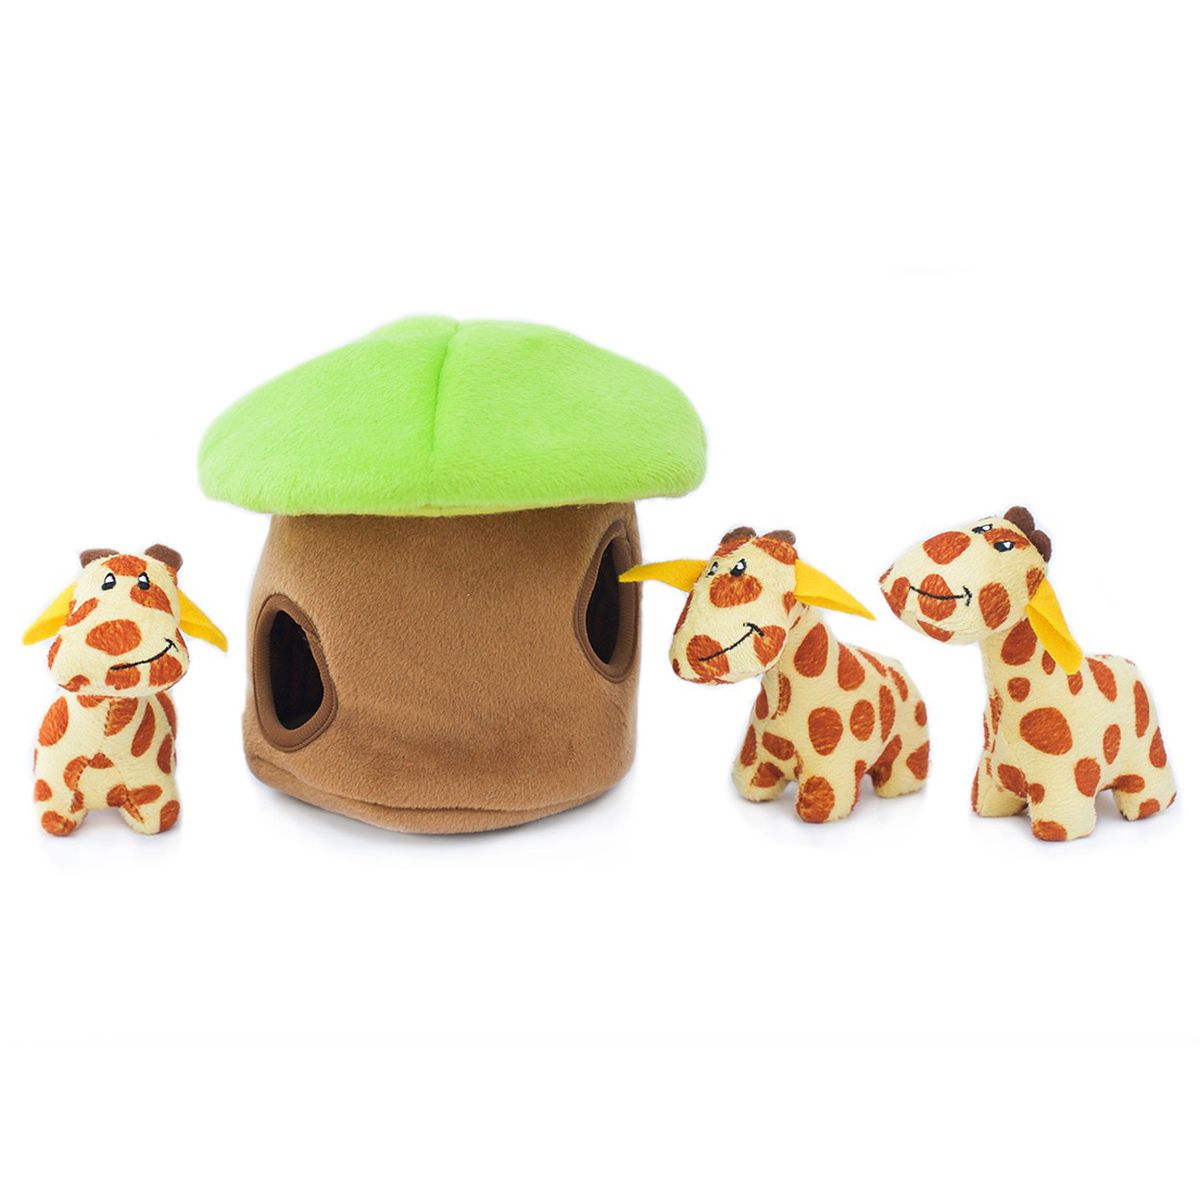 ZippyPaws Giraffe Lodge Burrow - Interactive Toys